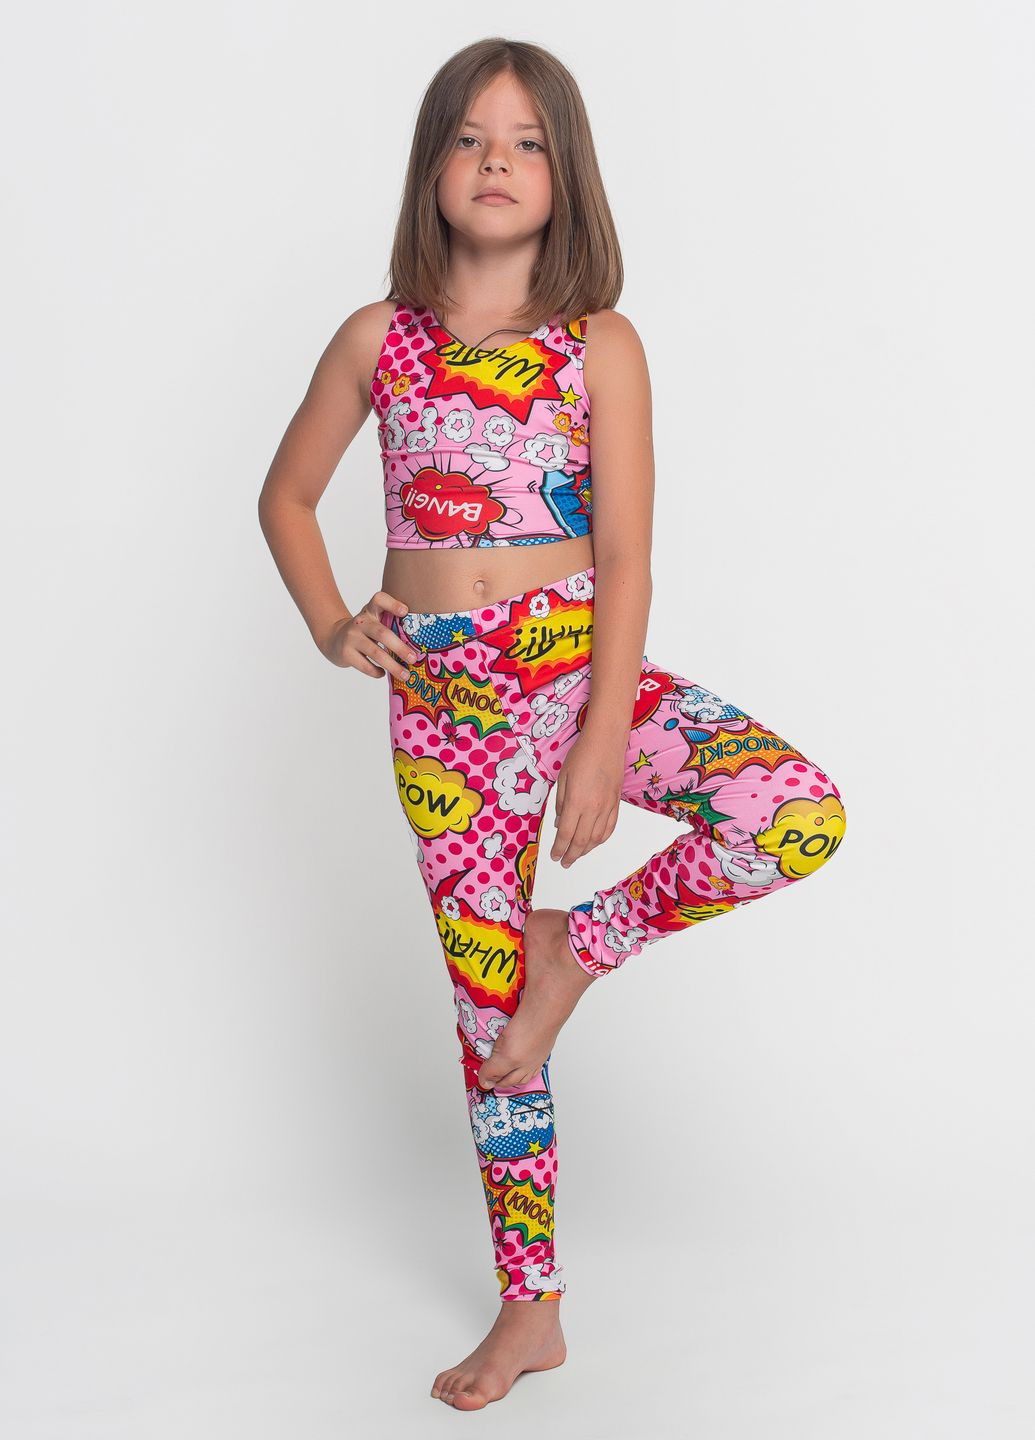 Комплект лосины и топ для девочки. Розовый спортивный костюм для гимнстики и танцев Total Pro fitness (276534301)